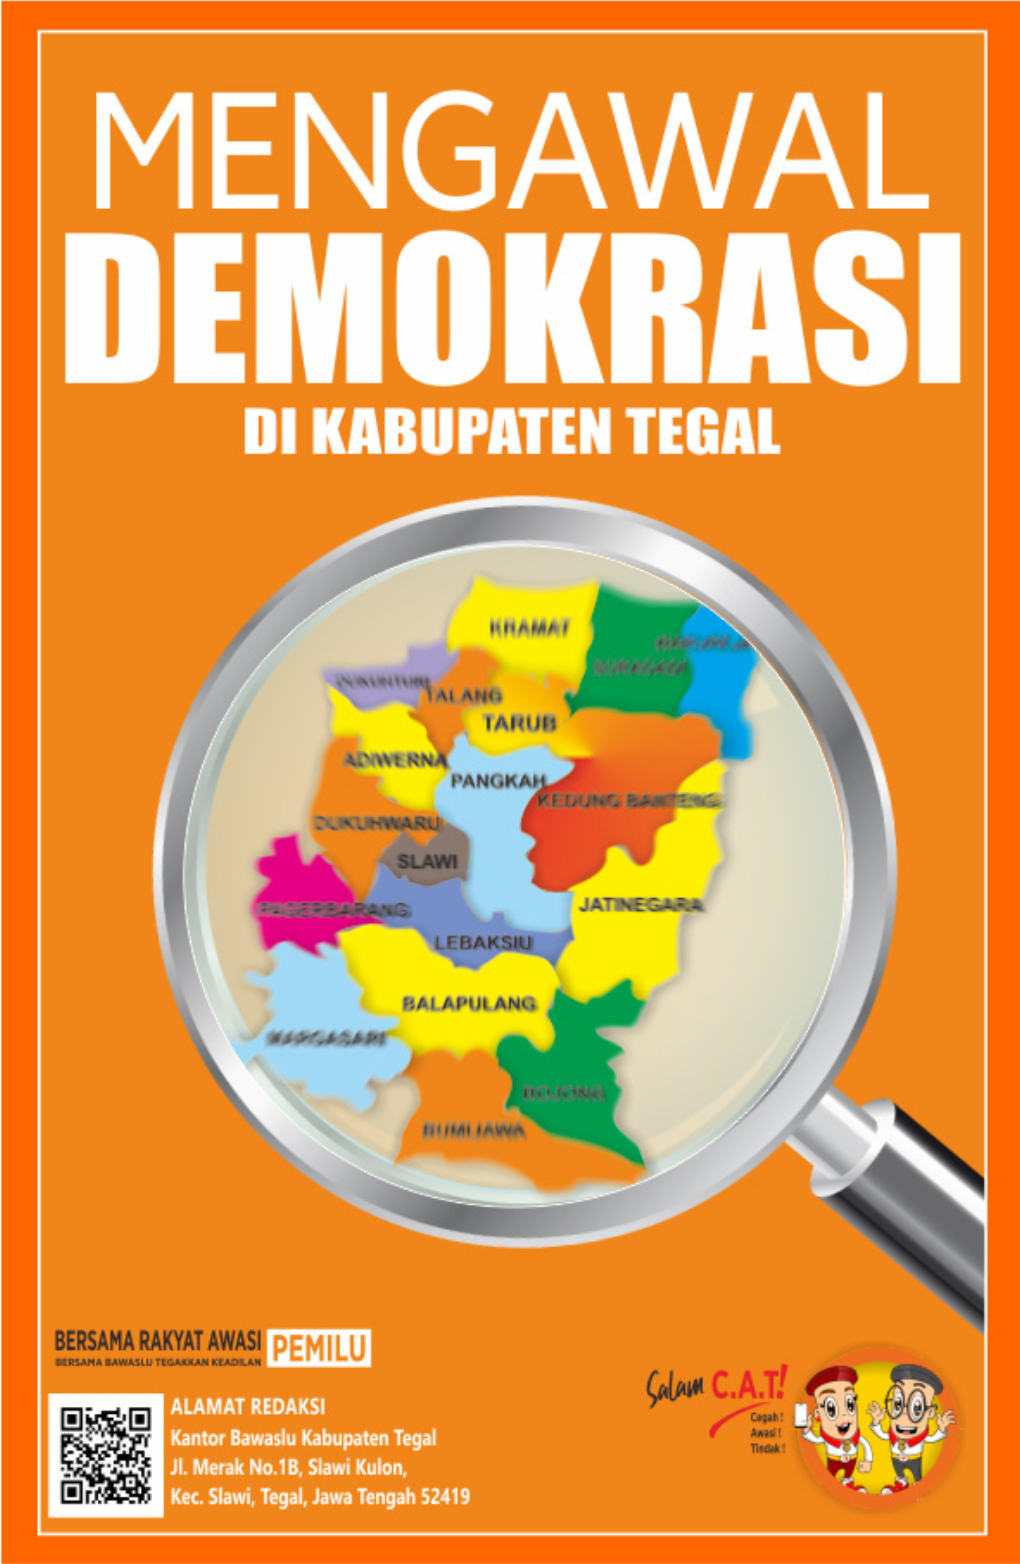 MENGAWAL DEMOKRASI Di Kabupaten Tegal